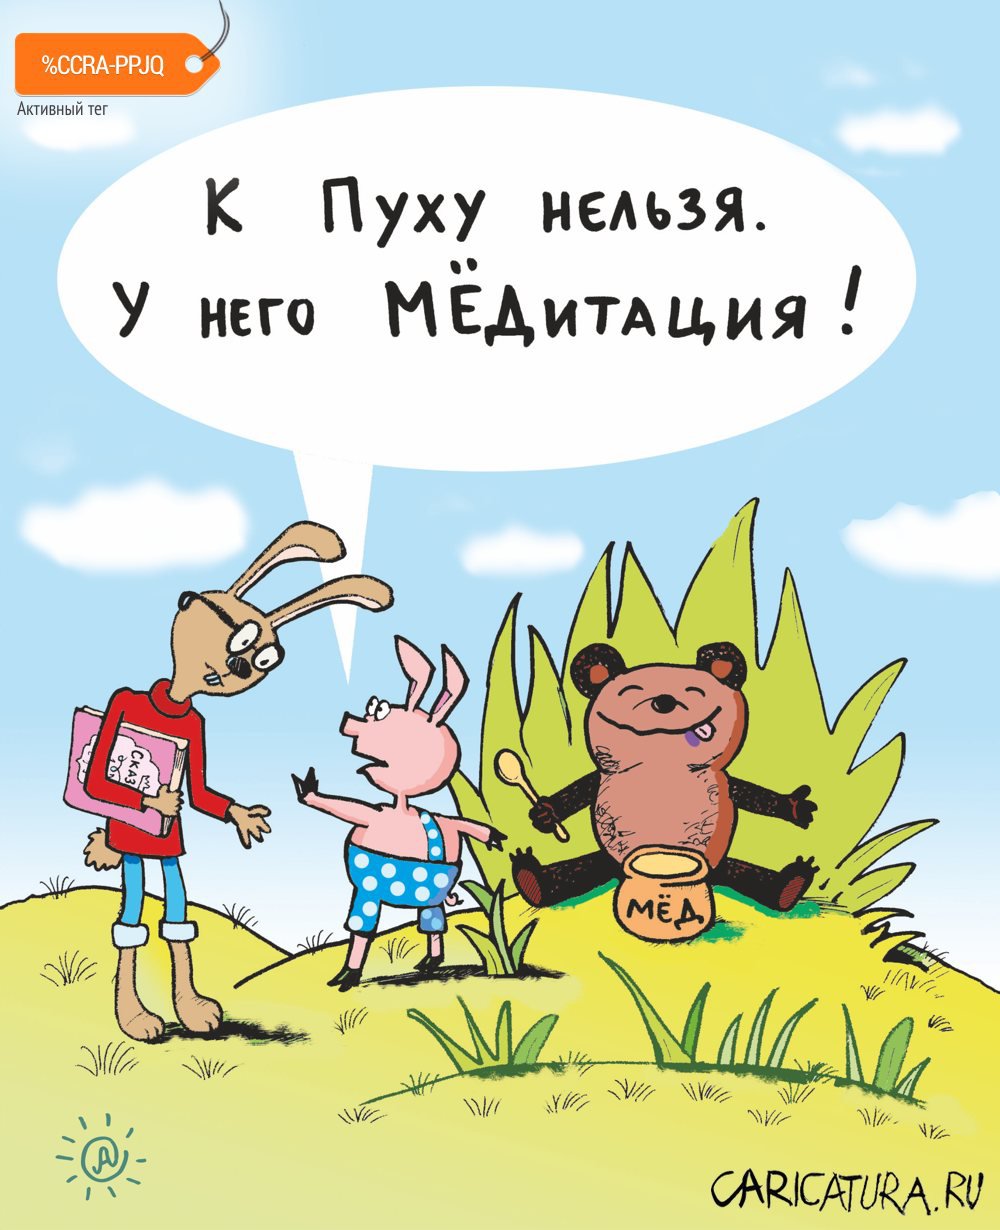 Карикатура "Мёдитация", Павел Атаманчук